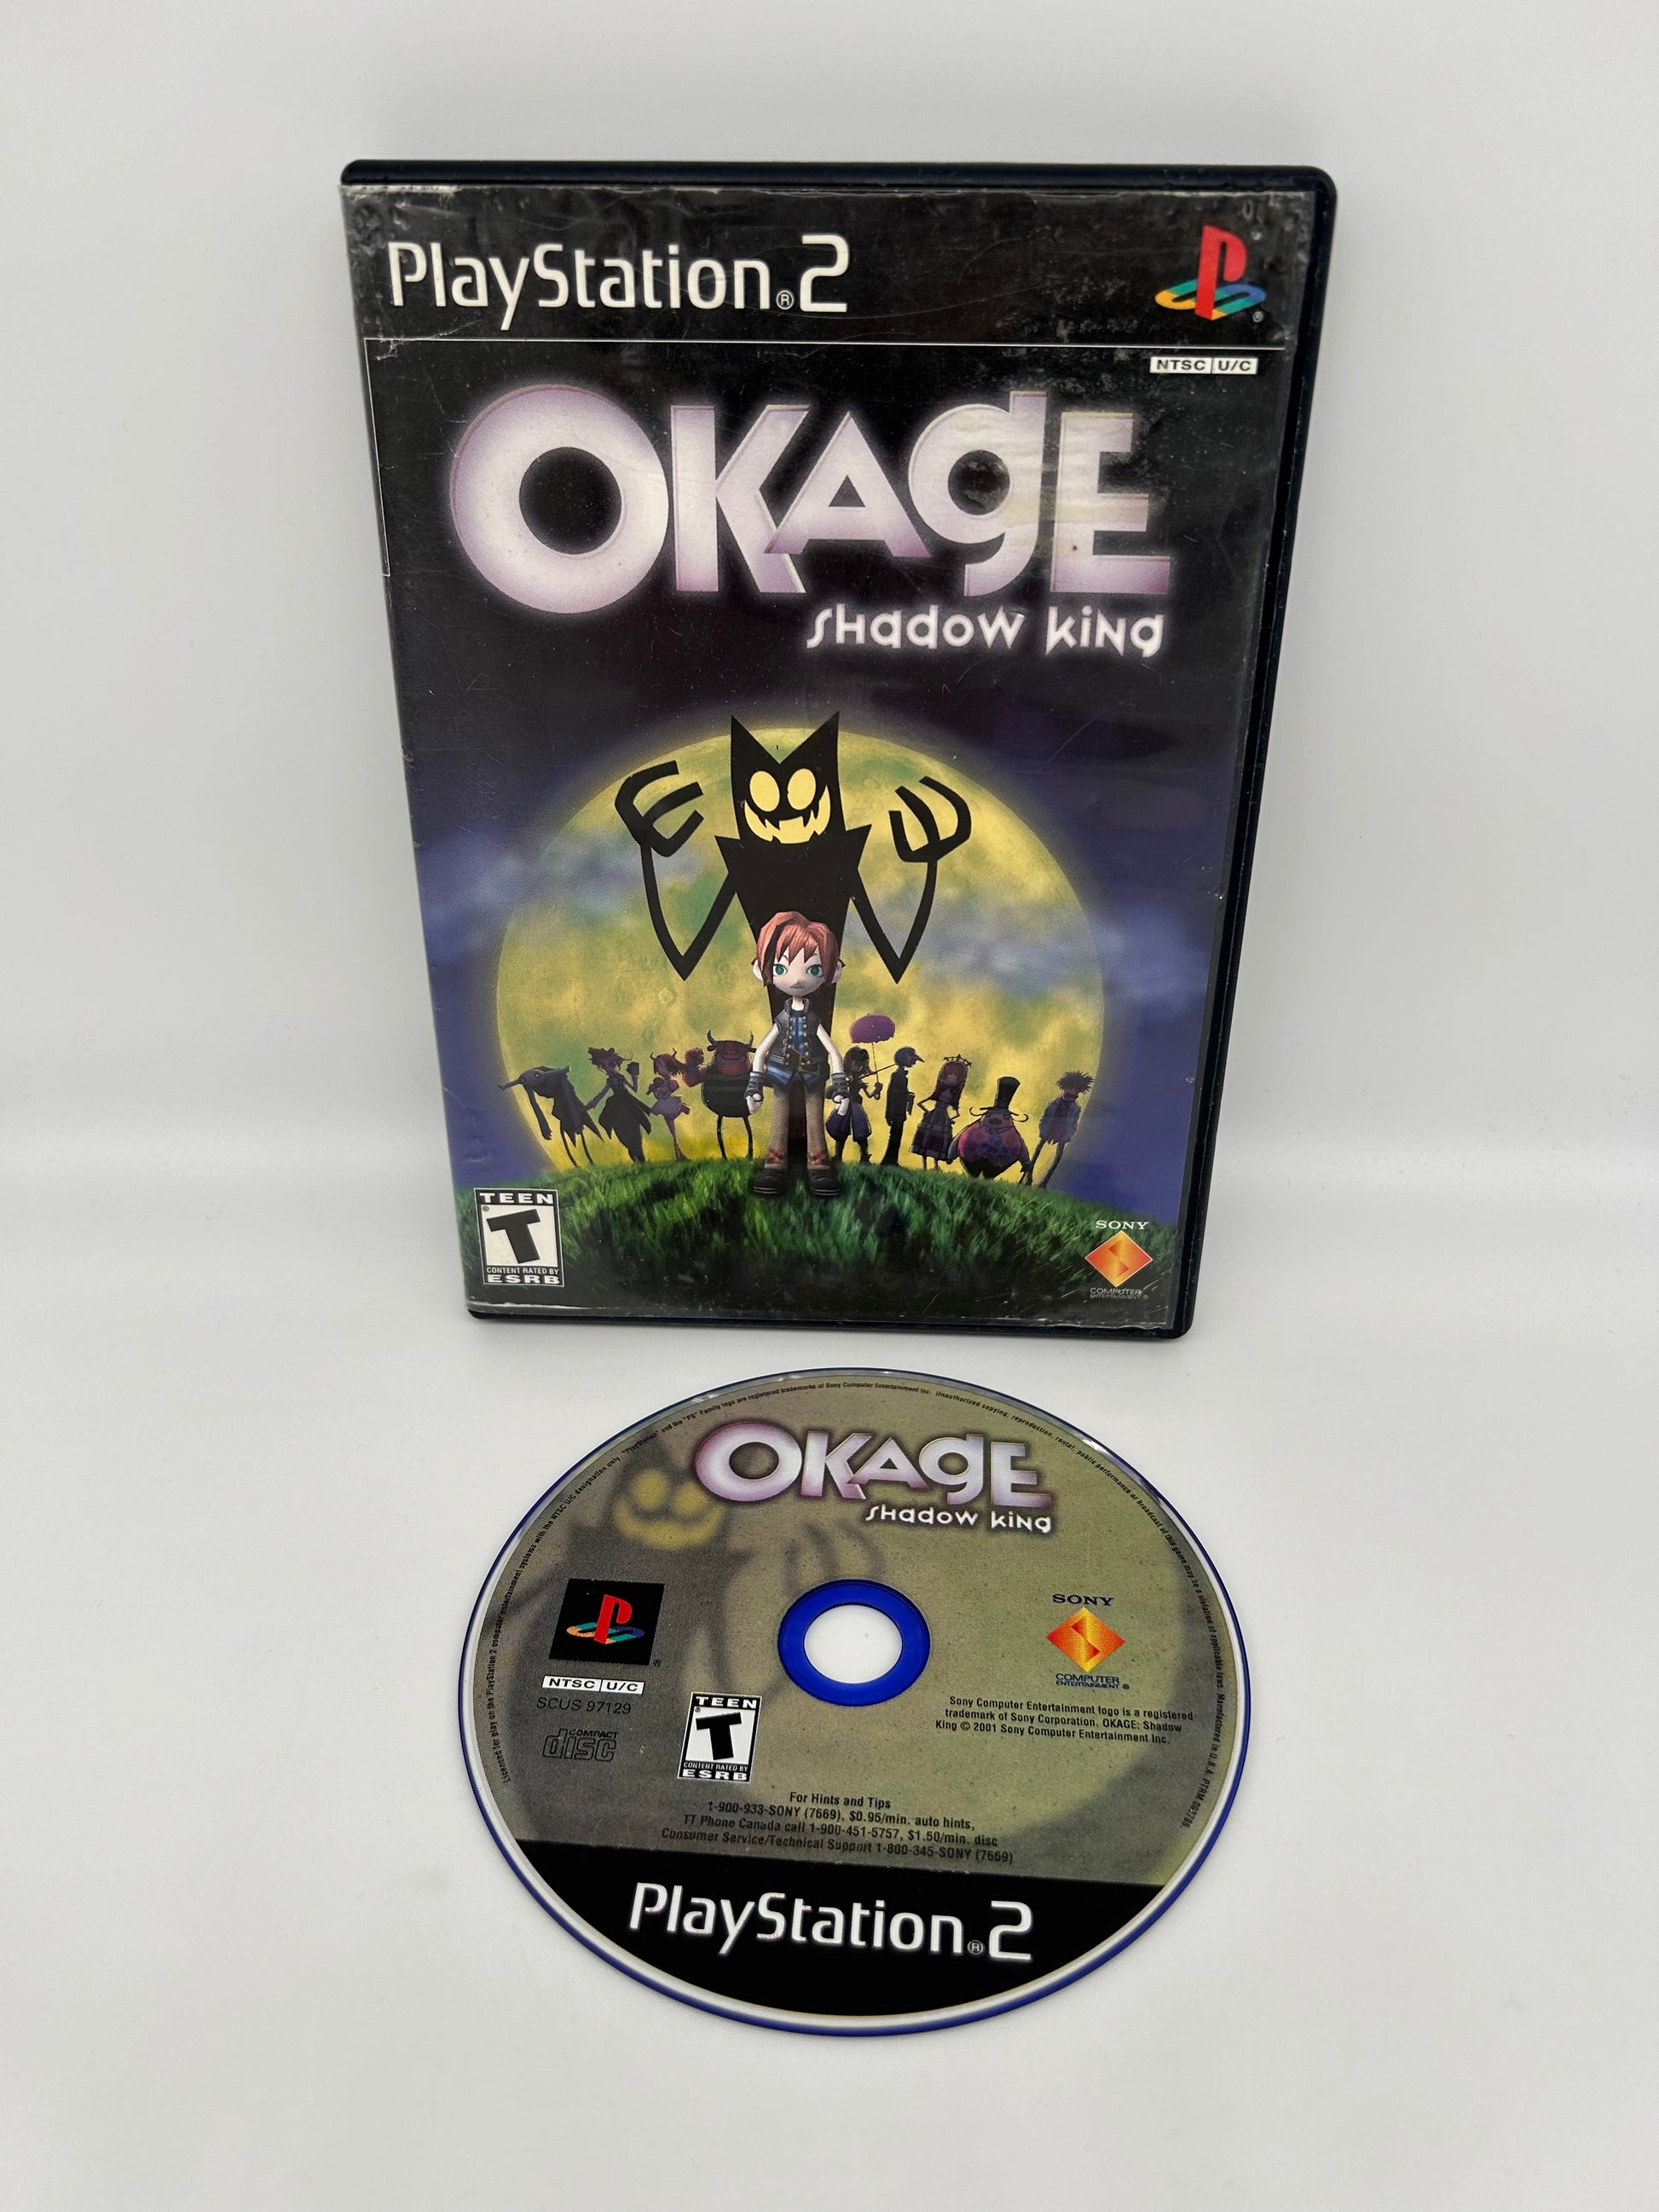 PiXEL-RETRO.COM : SONY PLAYSTATION 2 (PS2) COMPLET CIB BOX MANUAL GAME NTSC OKAGE SHADOW KING